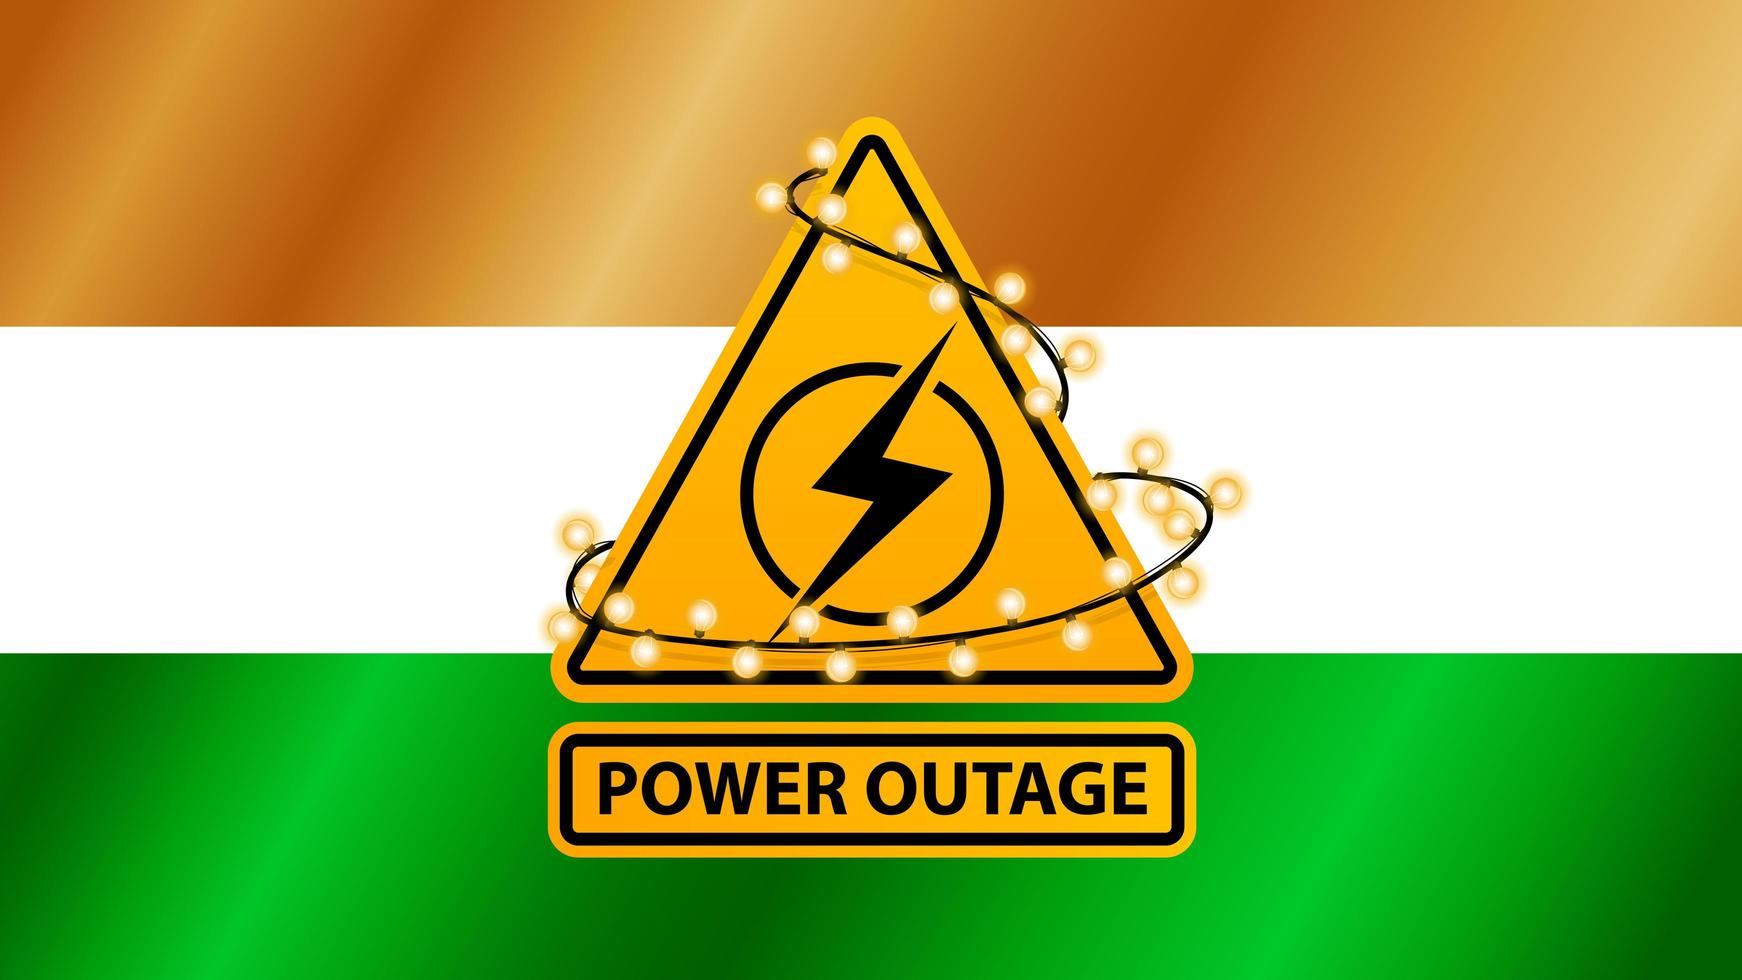 Stromausfall, gelbes Warnschild mit Girlande auf dem Hintergrund der Flagge von Indien gewickelt vektor